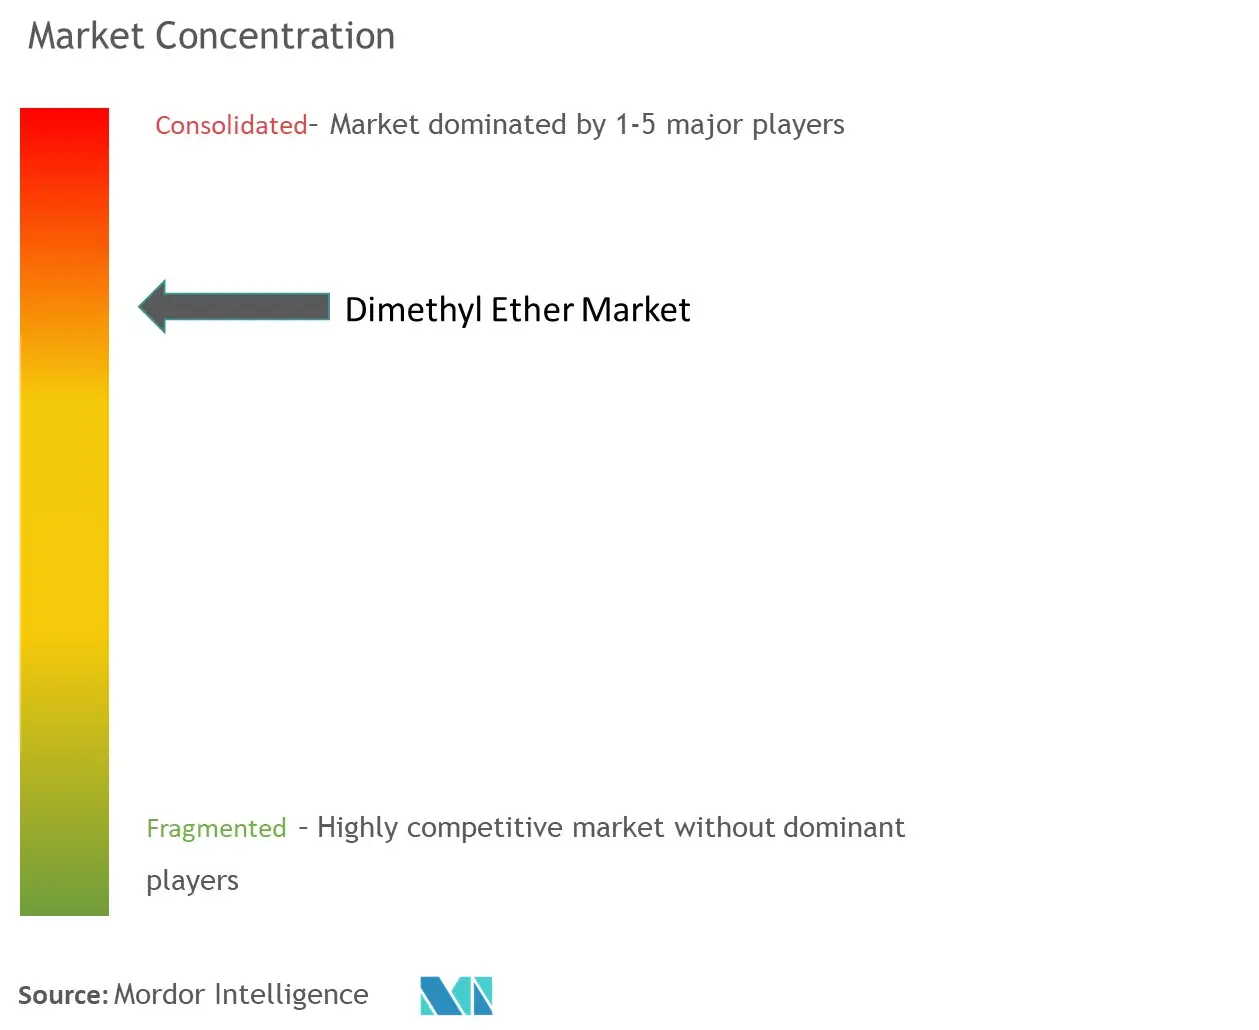 Dimethyl Ether Market Concentration